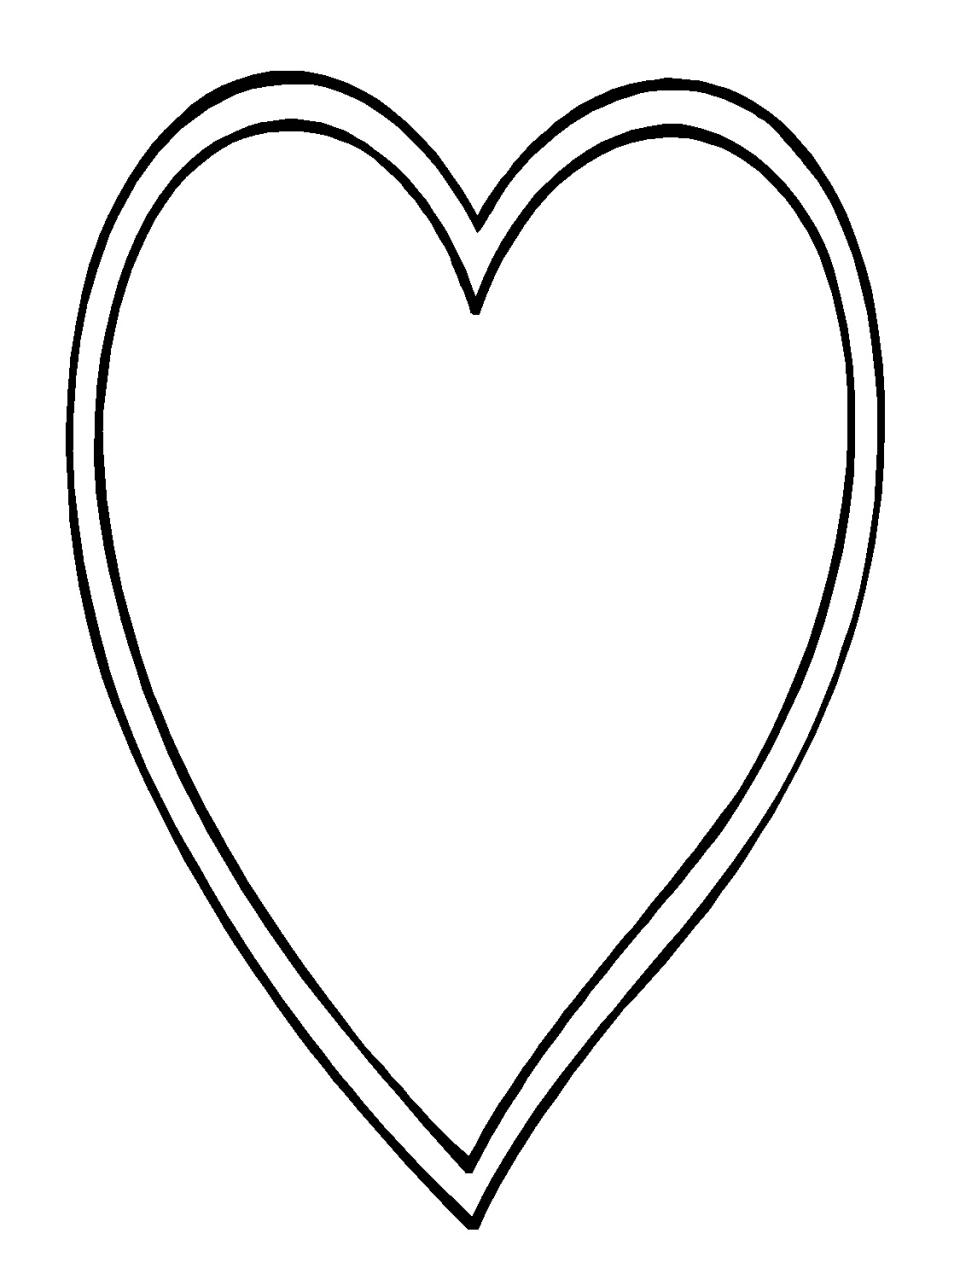 50 buc tranh to mau hinh trai tim dep nhat danh tang cho be 9 - 50+ bức tranh tô màu hình trái tim đẹp nhất dành tặng cho bé